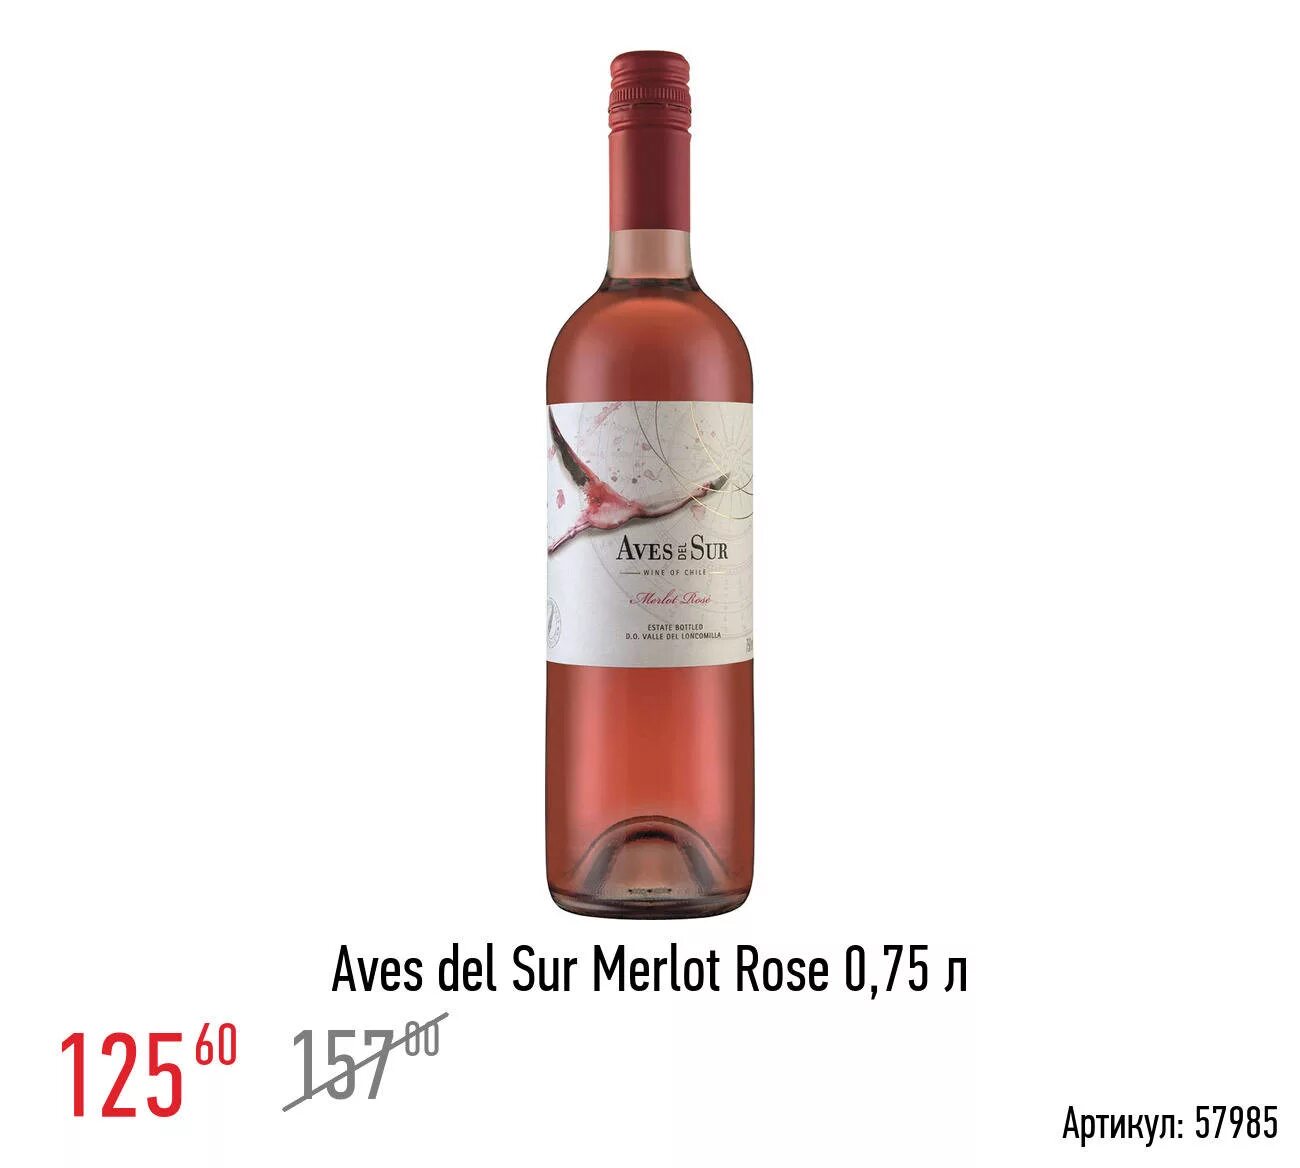 Мерло розовое полусухое. Вино Мерло Розе АВЕС дель сур розовое. Aves del sur вино. Вино Aurvin Merlot Rose. Вино АВЕС дель сур 0.75л Мерло Розе роз. П/сух. 10.10.2022 3496067 Vinacarta 94700 7804310551930.